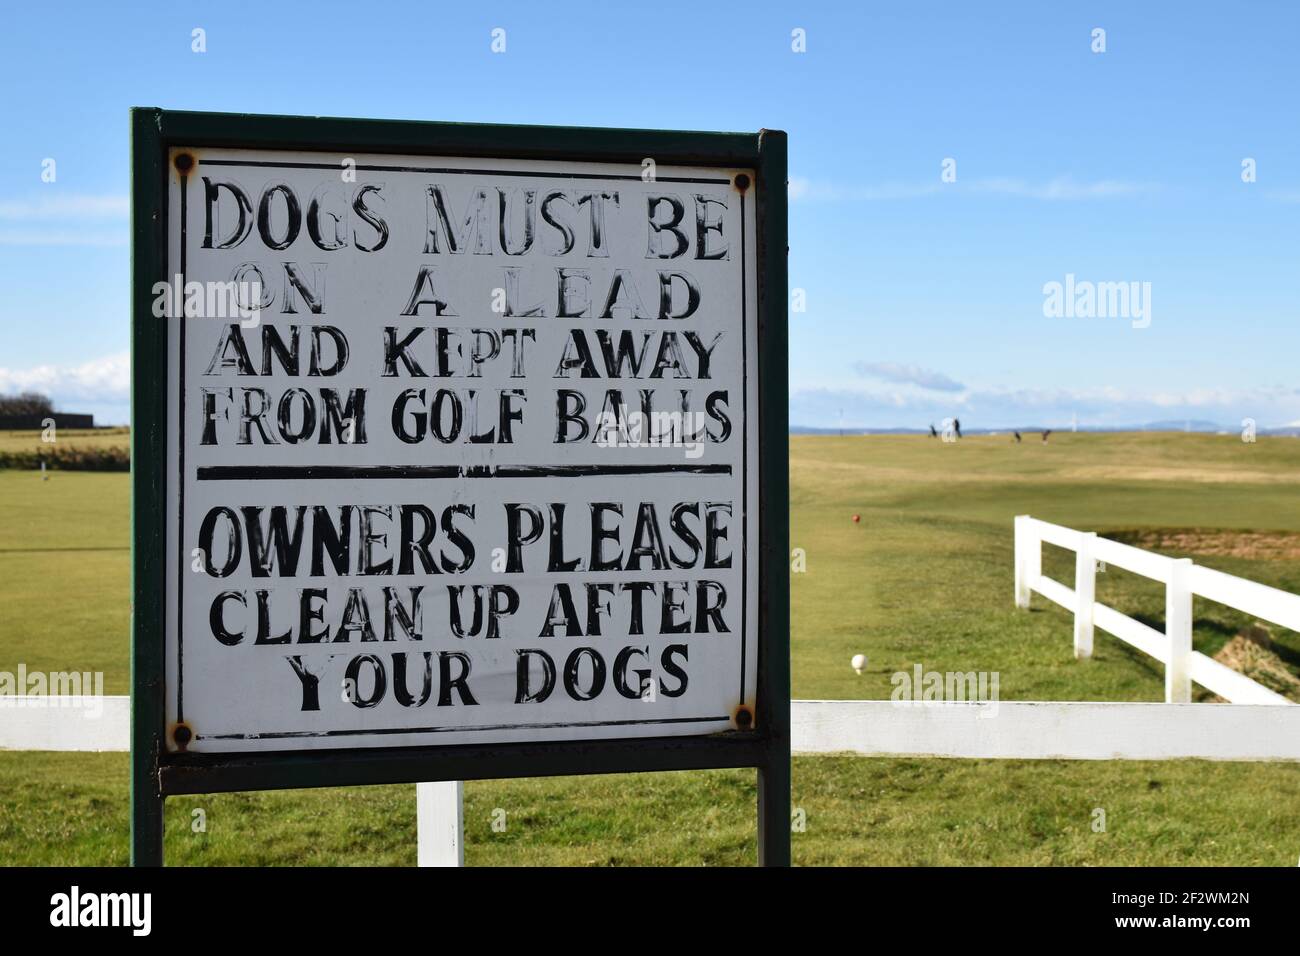 Señal auténtica en el campo de golf para los dueños de perros - perros en plomo y lejos de pelotas de golf, limpieza después de perros. Fondo del campo de golf borroso. Foto de stock